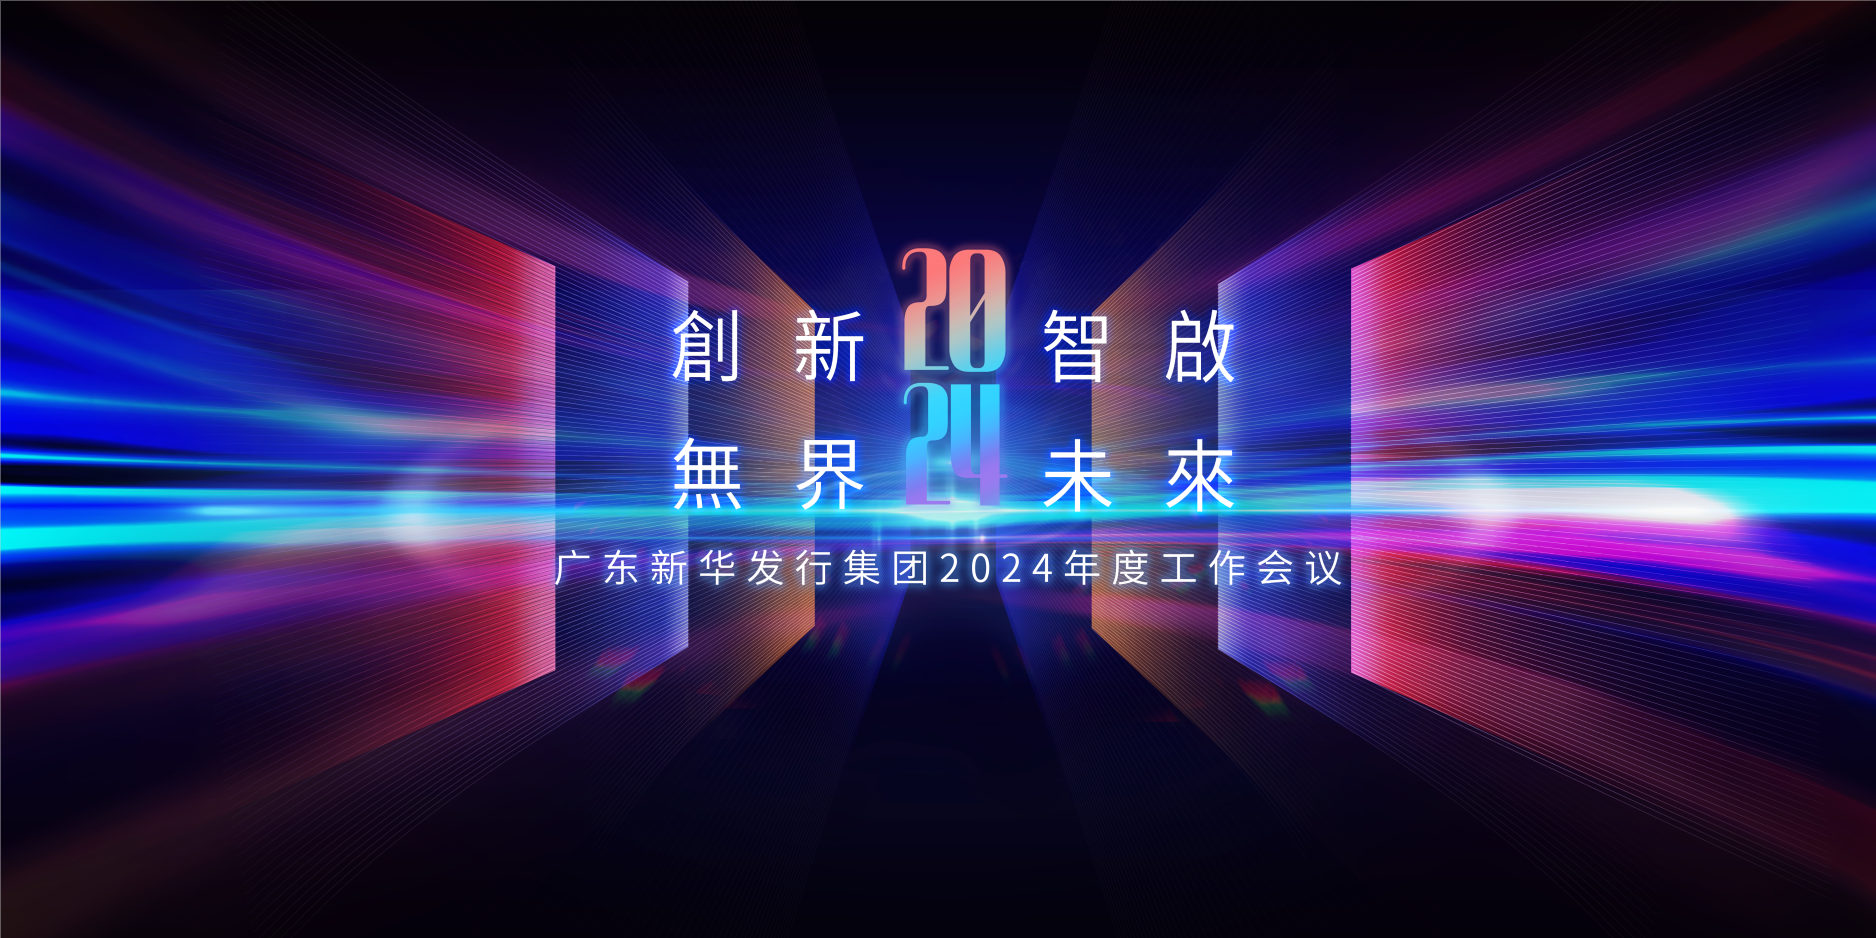 2024，我们这样干 ——广东新华发行集团召开2024年度工作会议